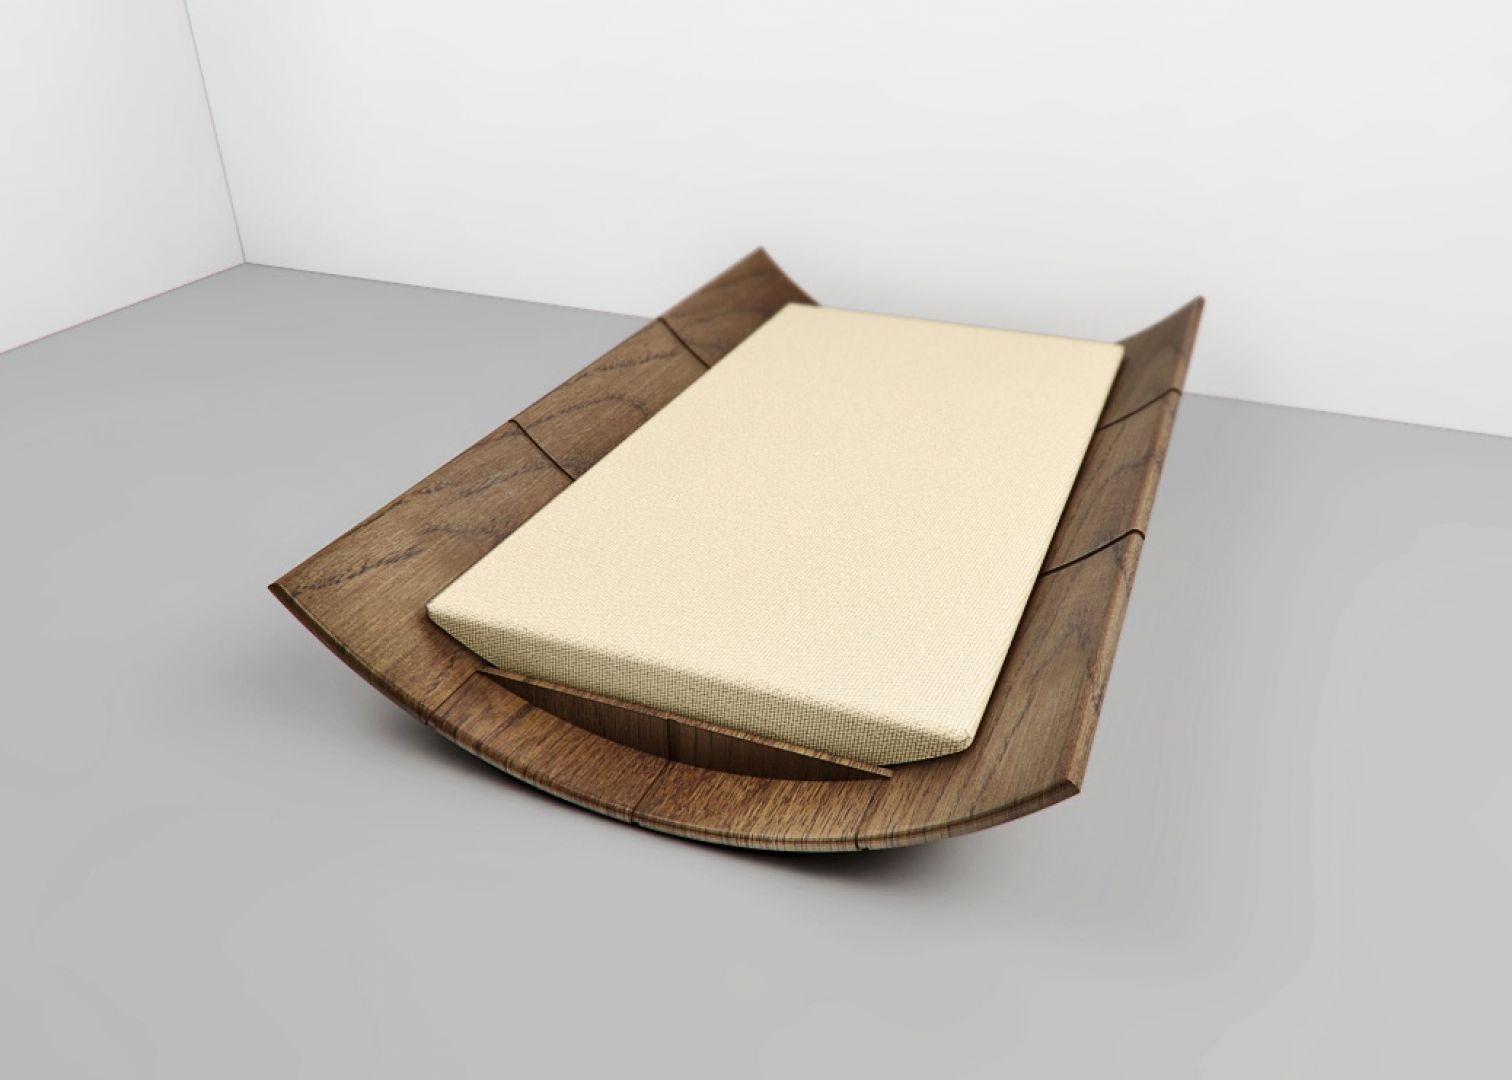 Łóżko umożliwiające bujanie się na boki. Łóżko w drewnianej skorupie. Projekt Tomasza Wagnera
Fot. Archiwum 